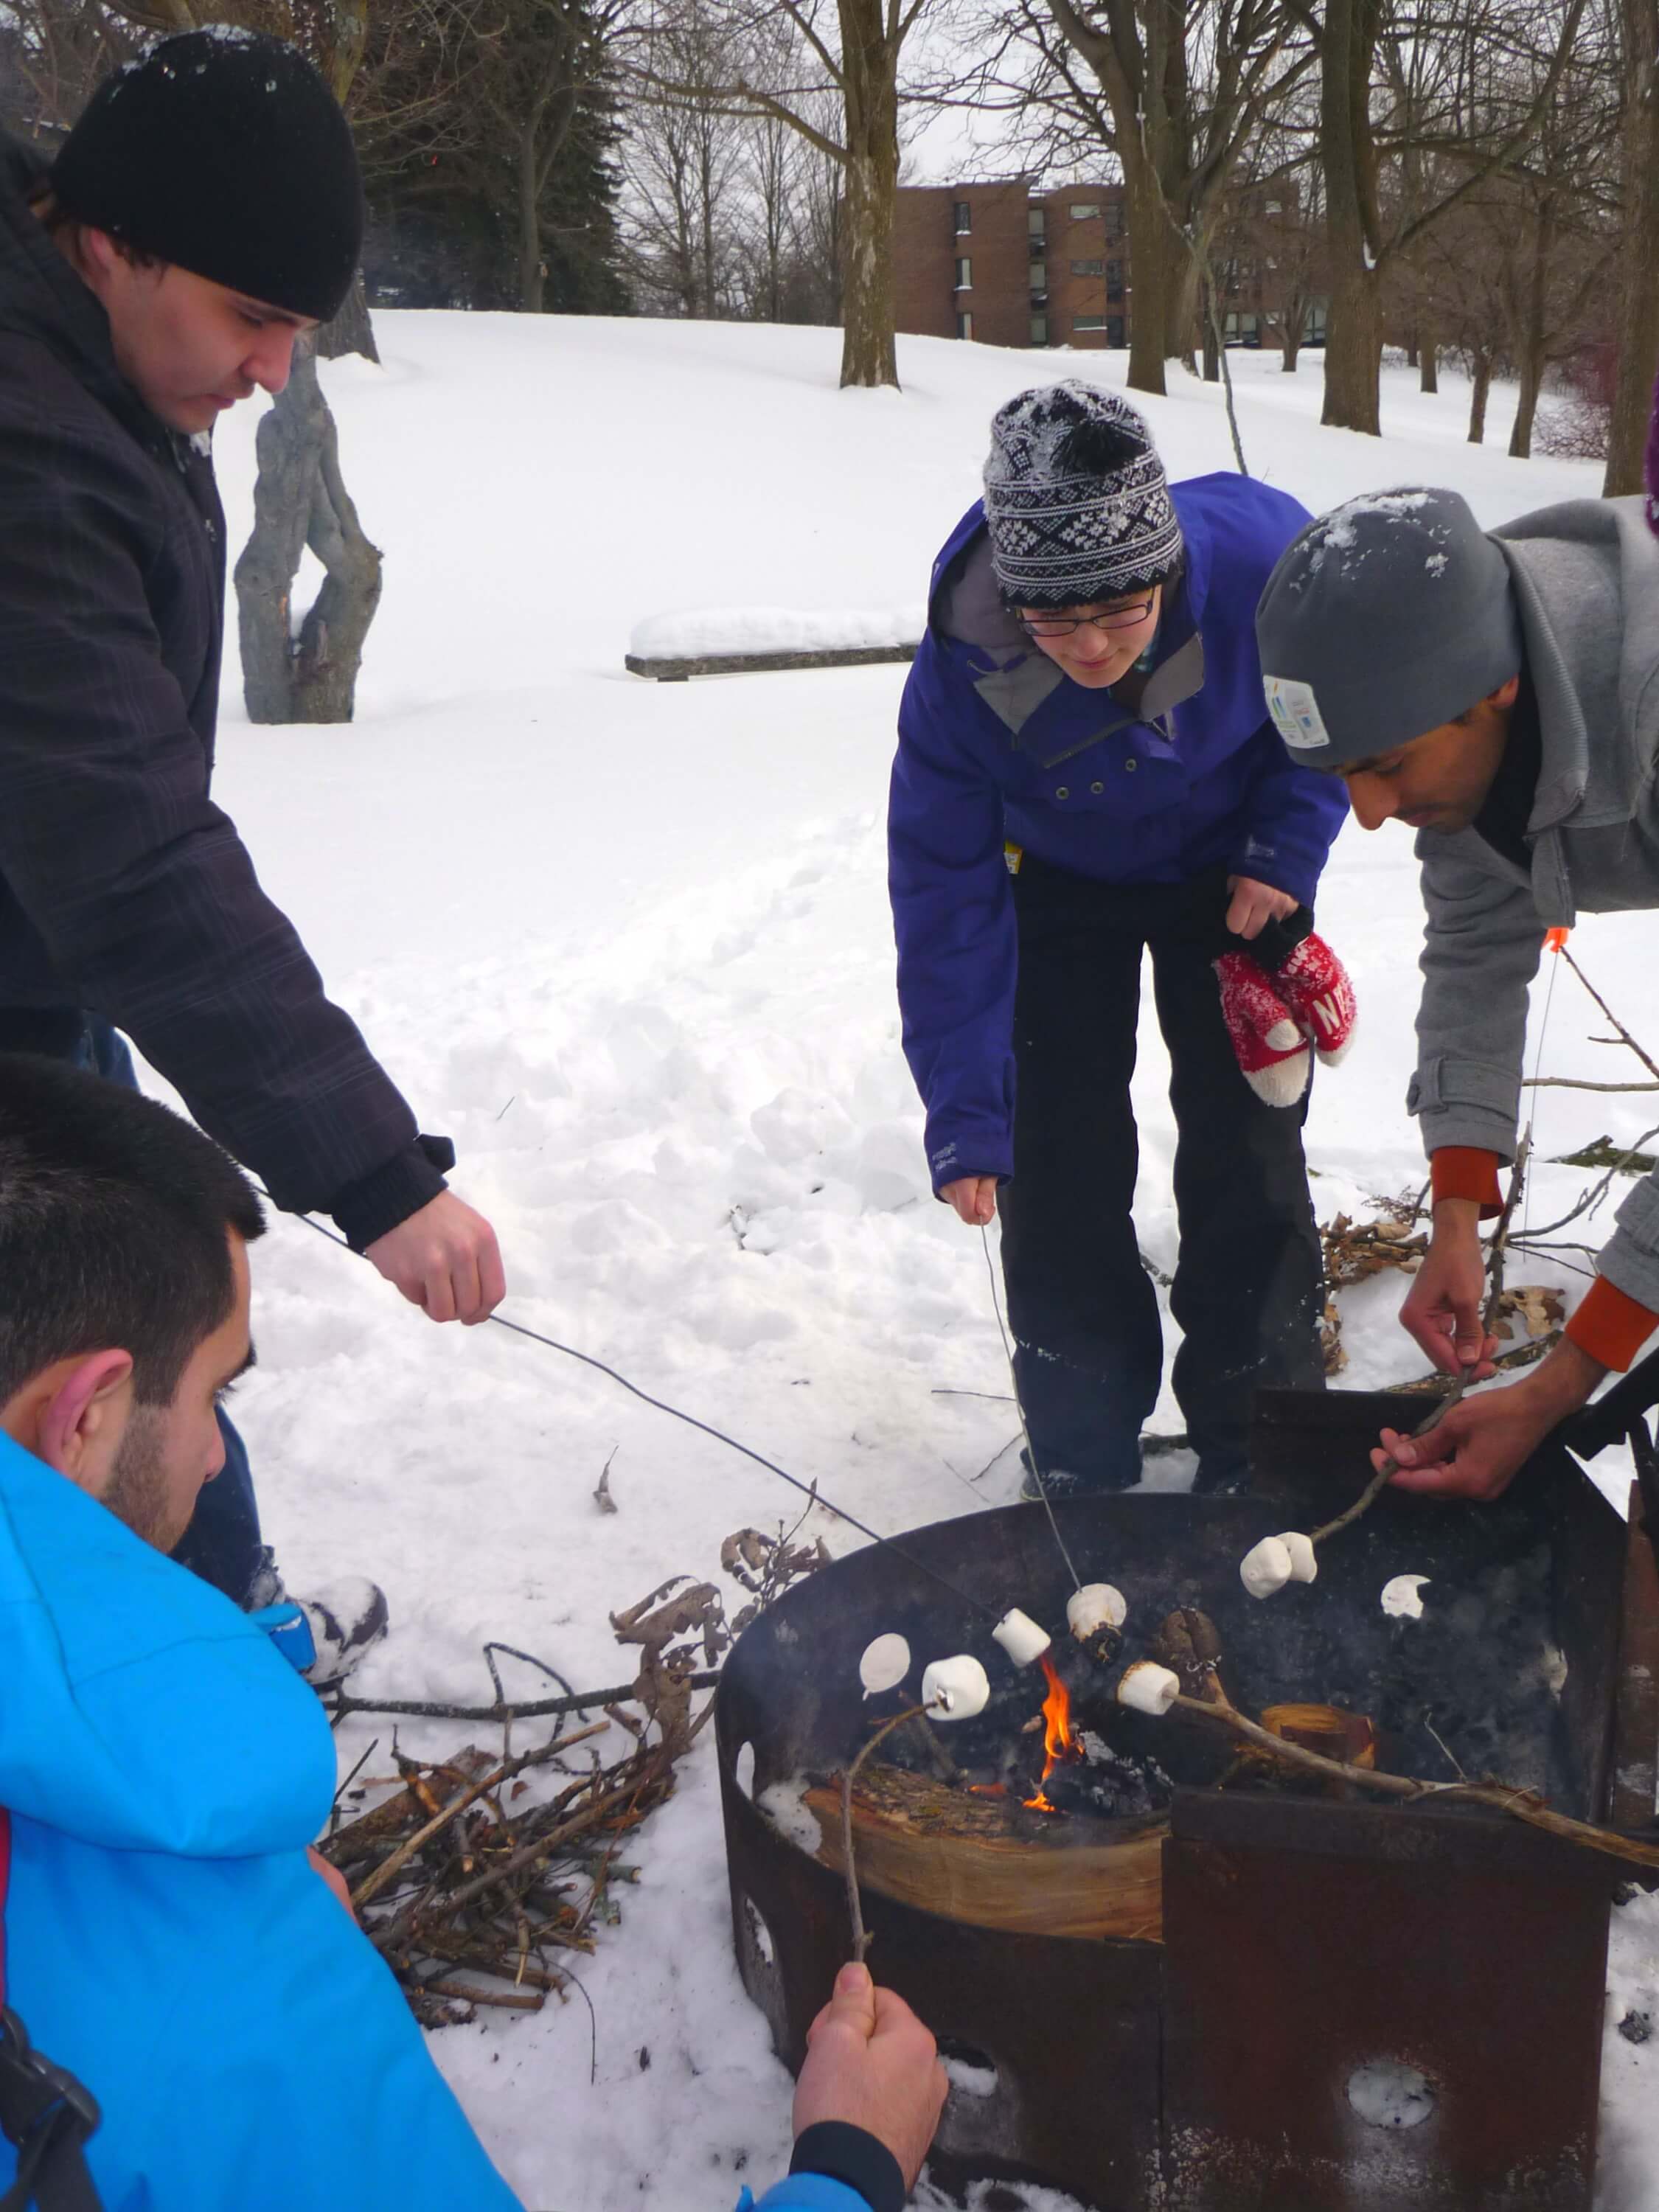 Students roasting marshmallows